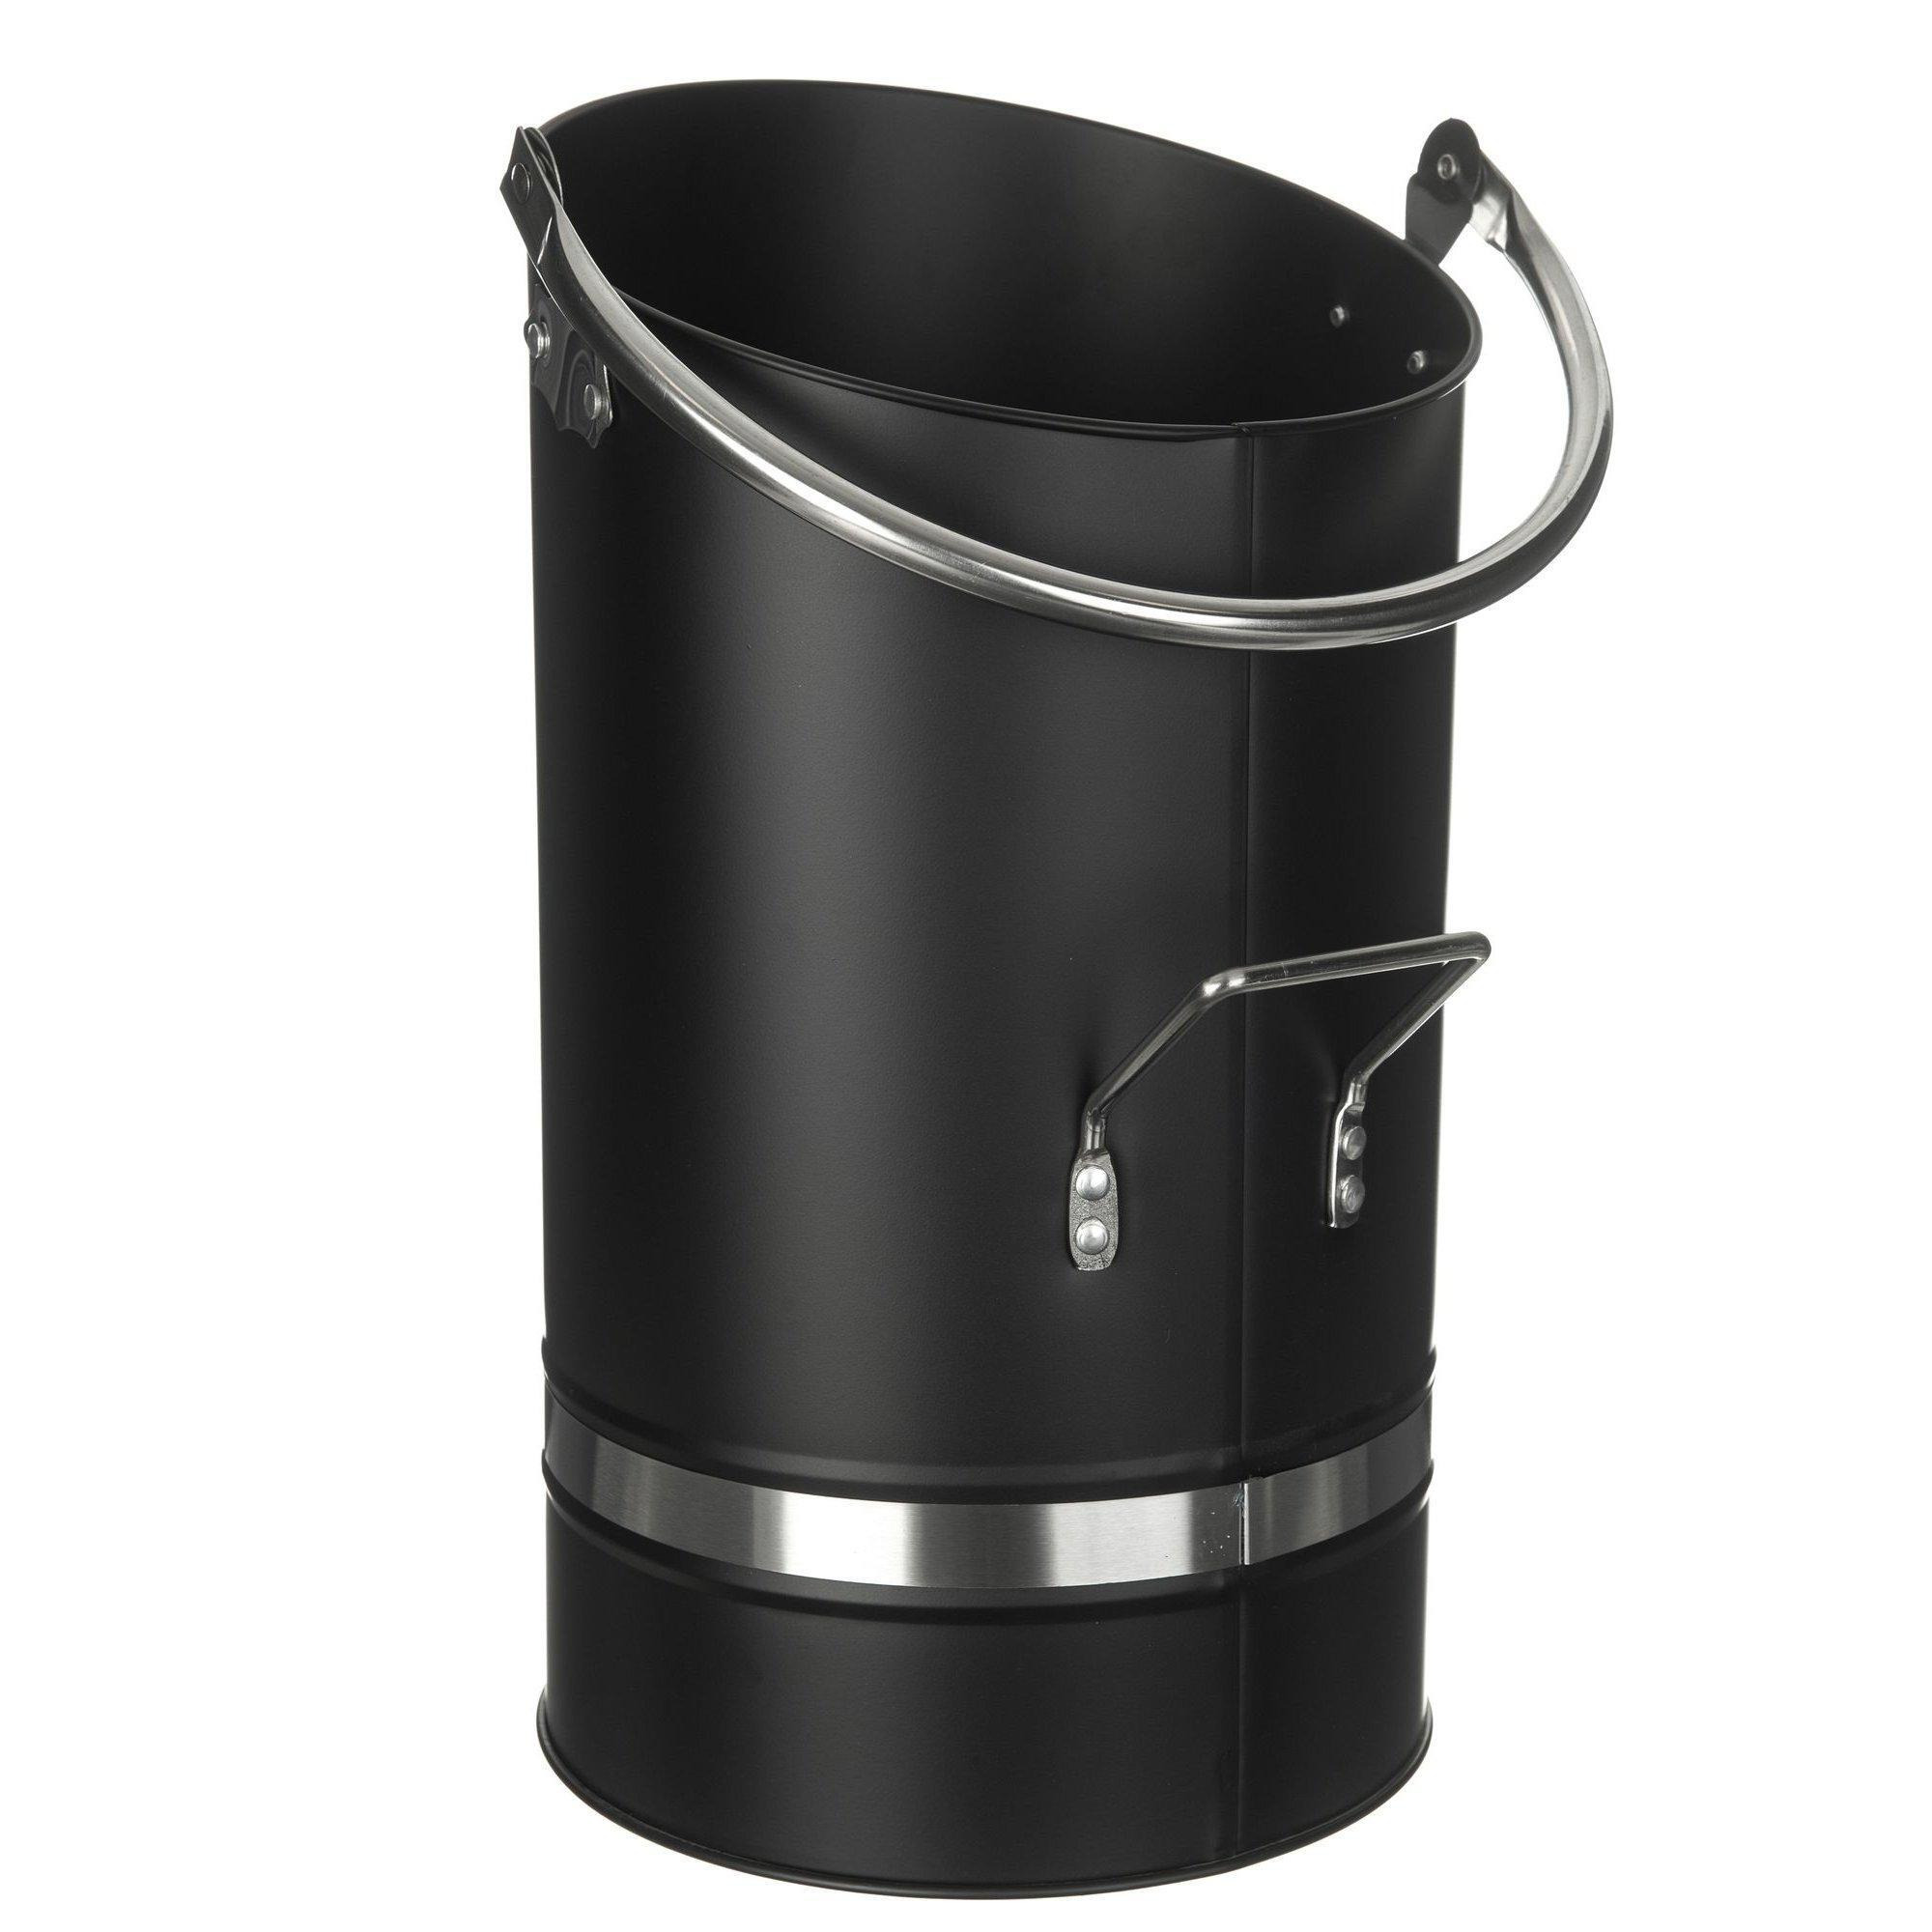 Coal Bucket With Nickel Coated Handle - image 1